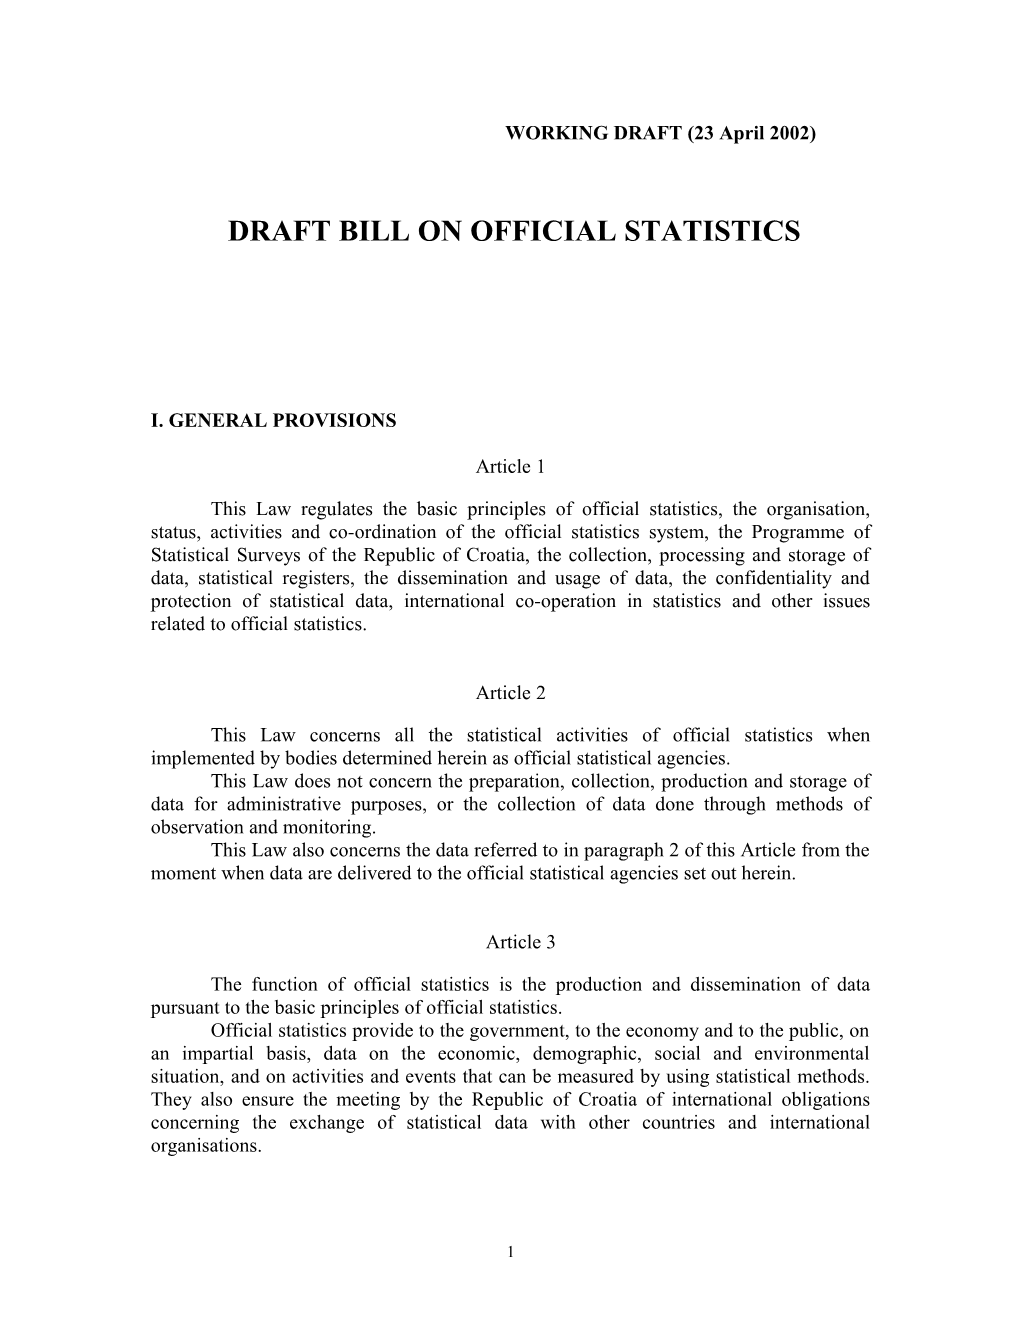 Draft Bill on Official Statistics